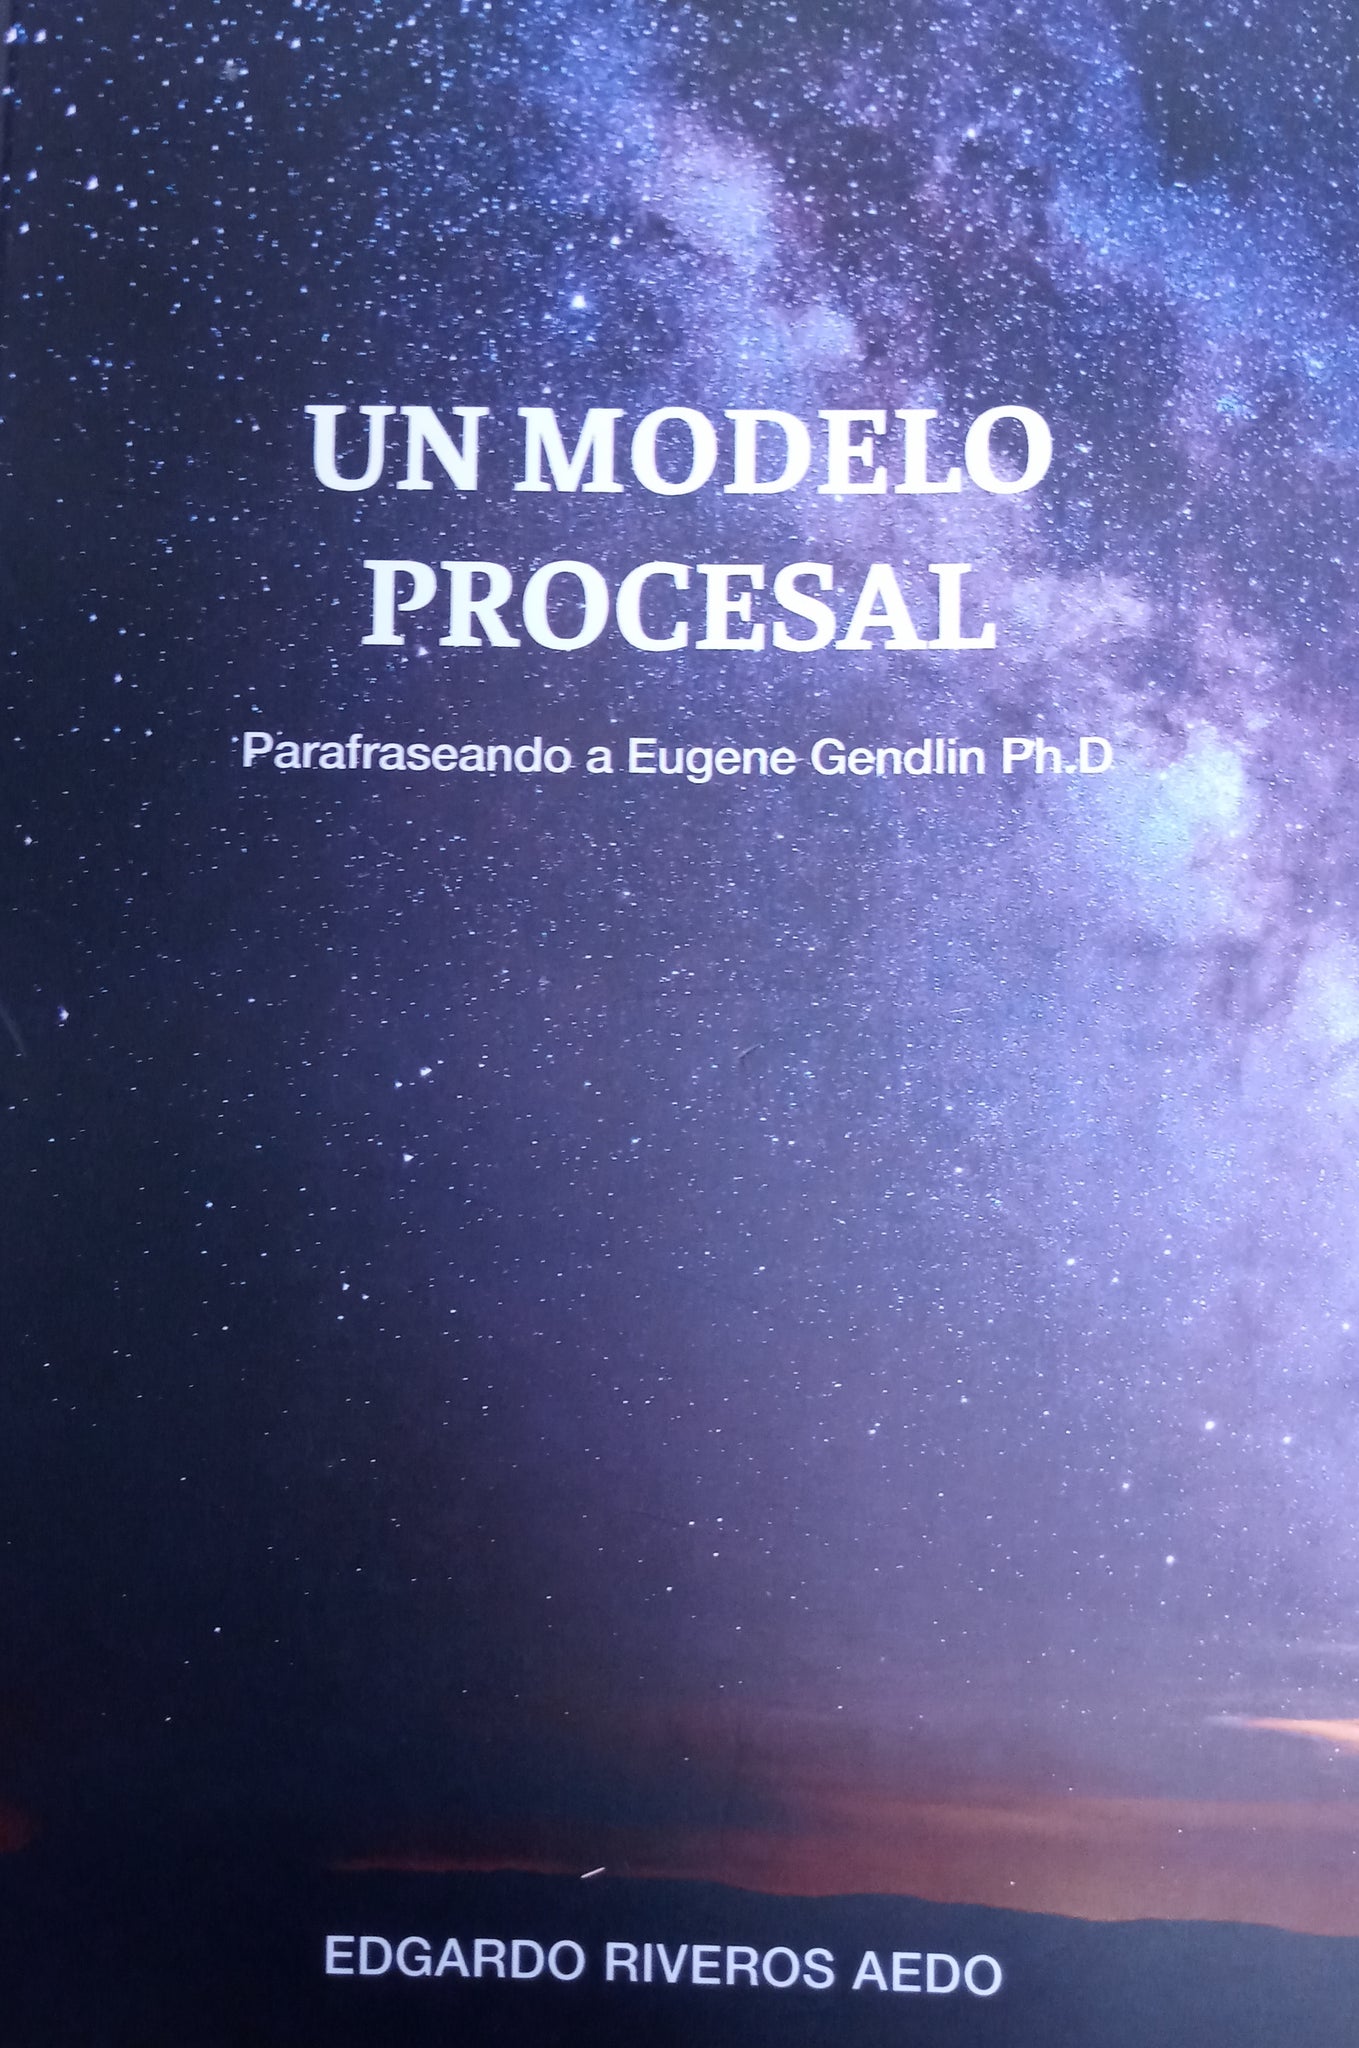 Un Modelo Procesal Parafraseando a Eugene Gendlin Ph.D